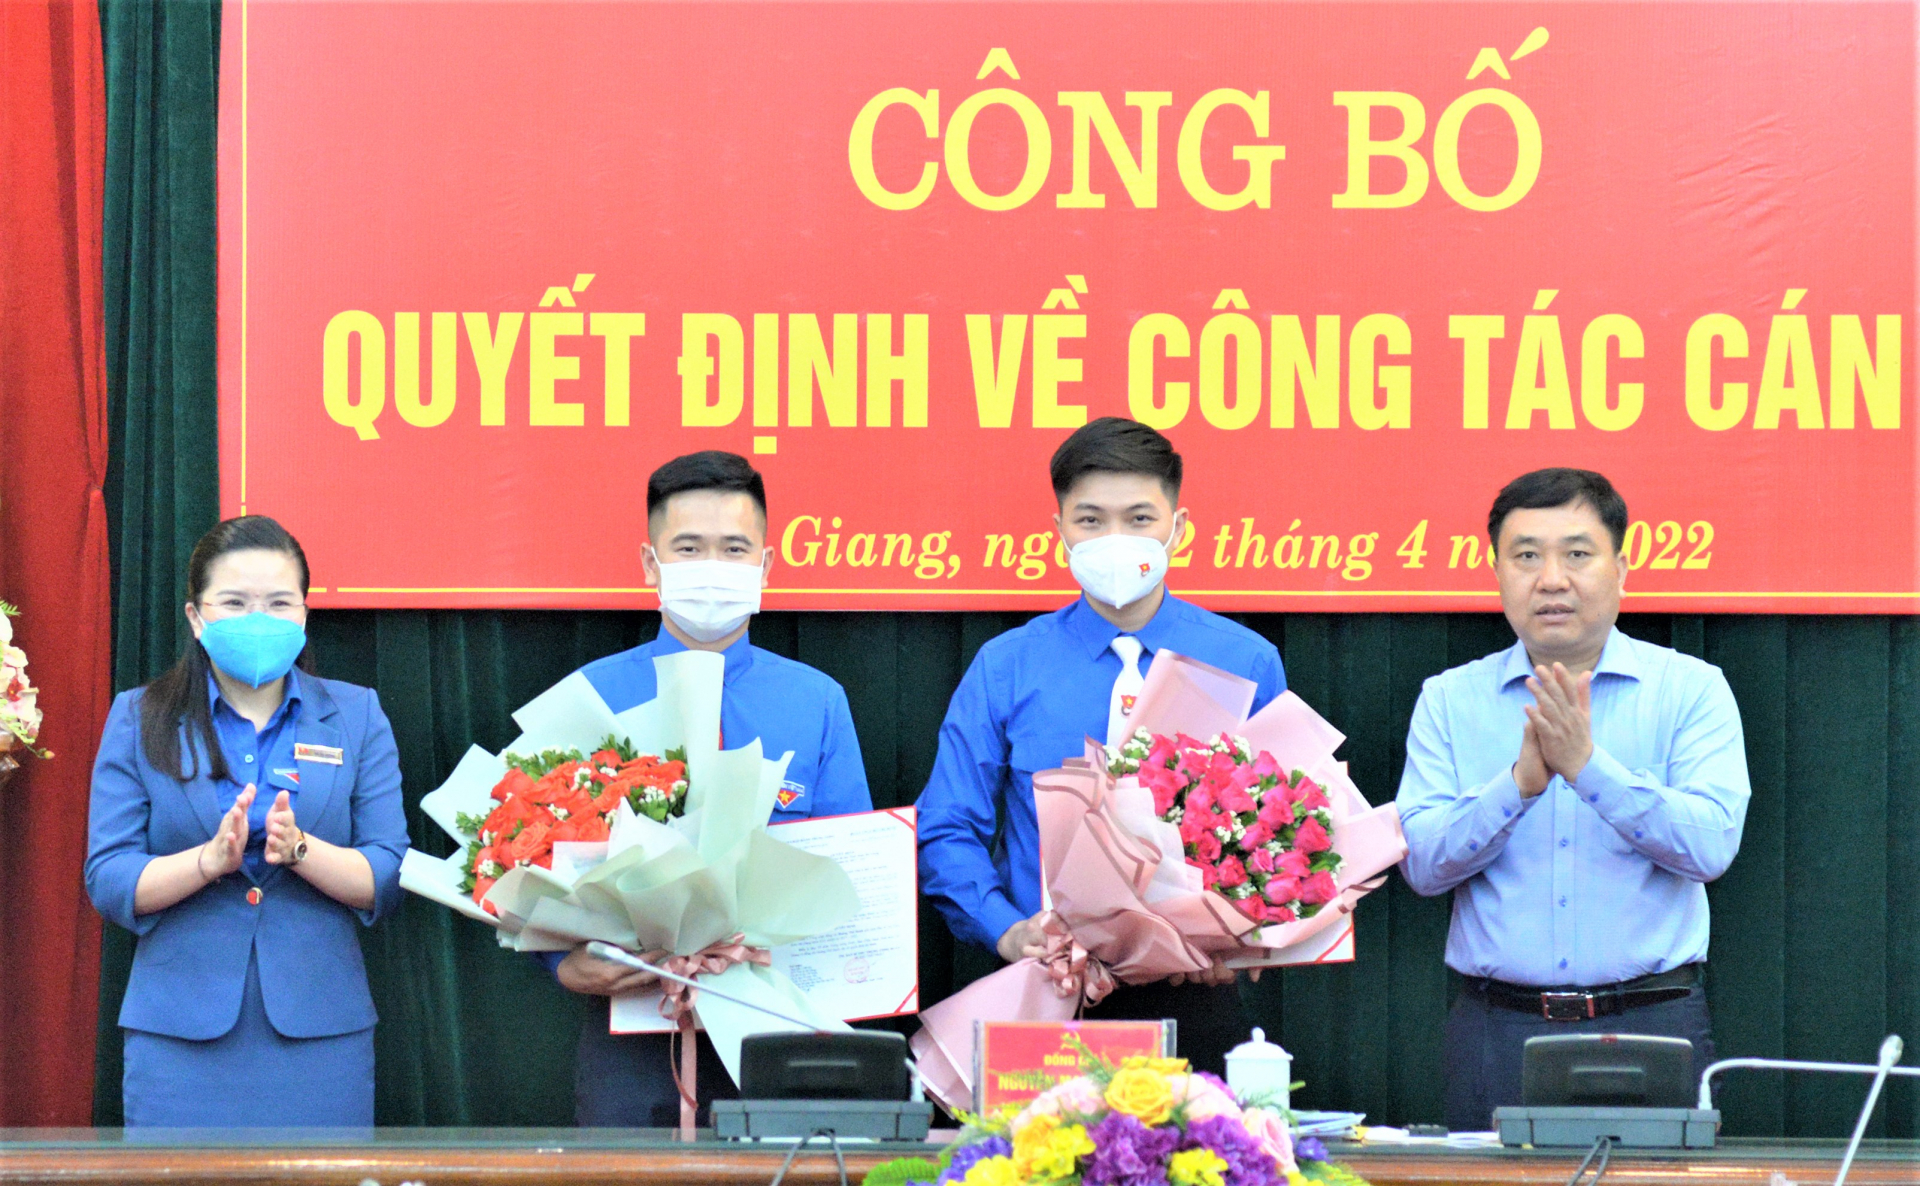 Phó Bí thư Tỉnh ủy Nguyễn Mạnh Dũng trao quyết định, tặng hoa chúc mừng đồng chí Nguyễn Hải Dương và Hoàng Thế Hanh.